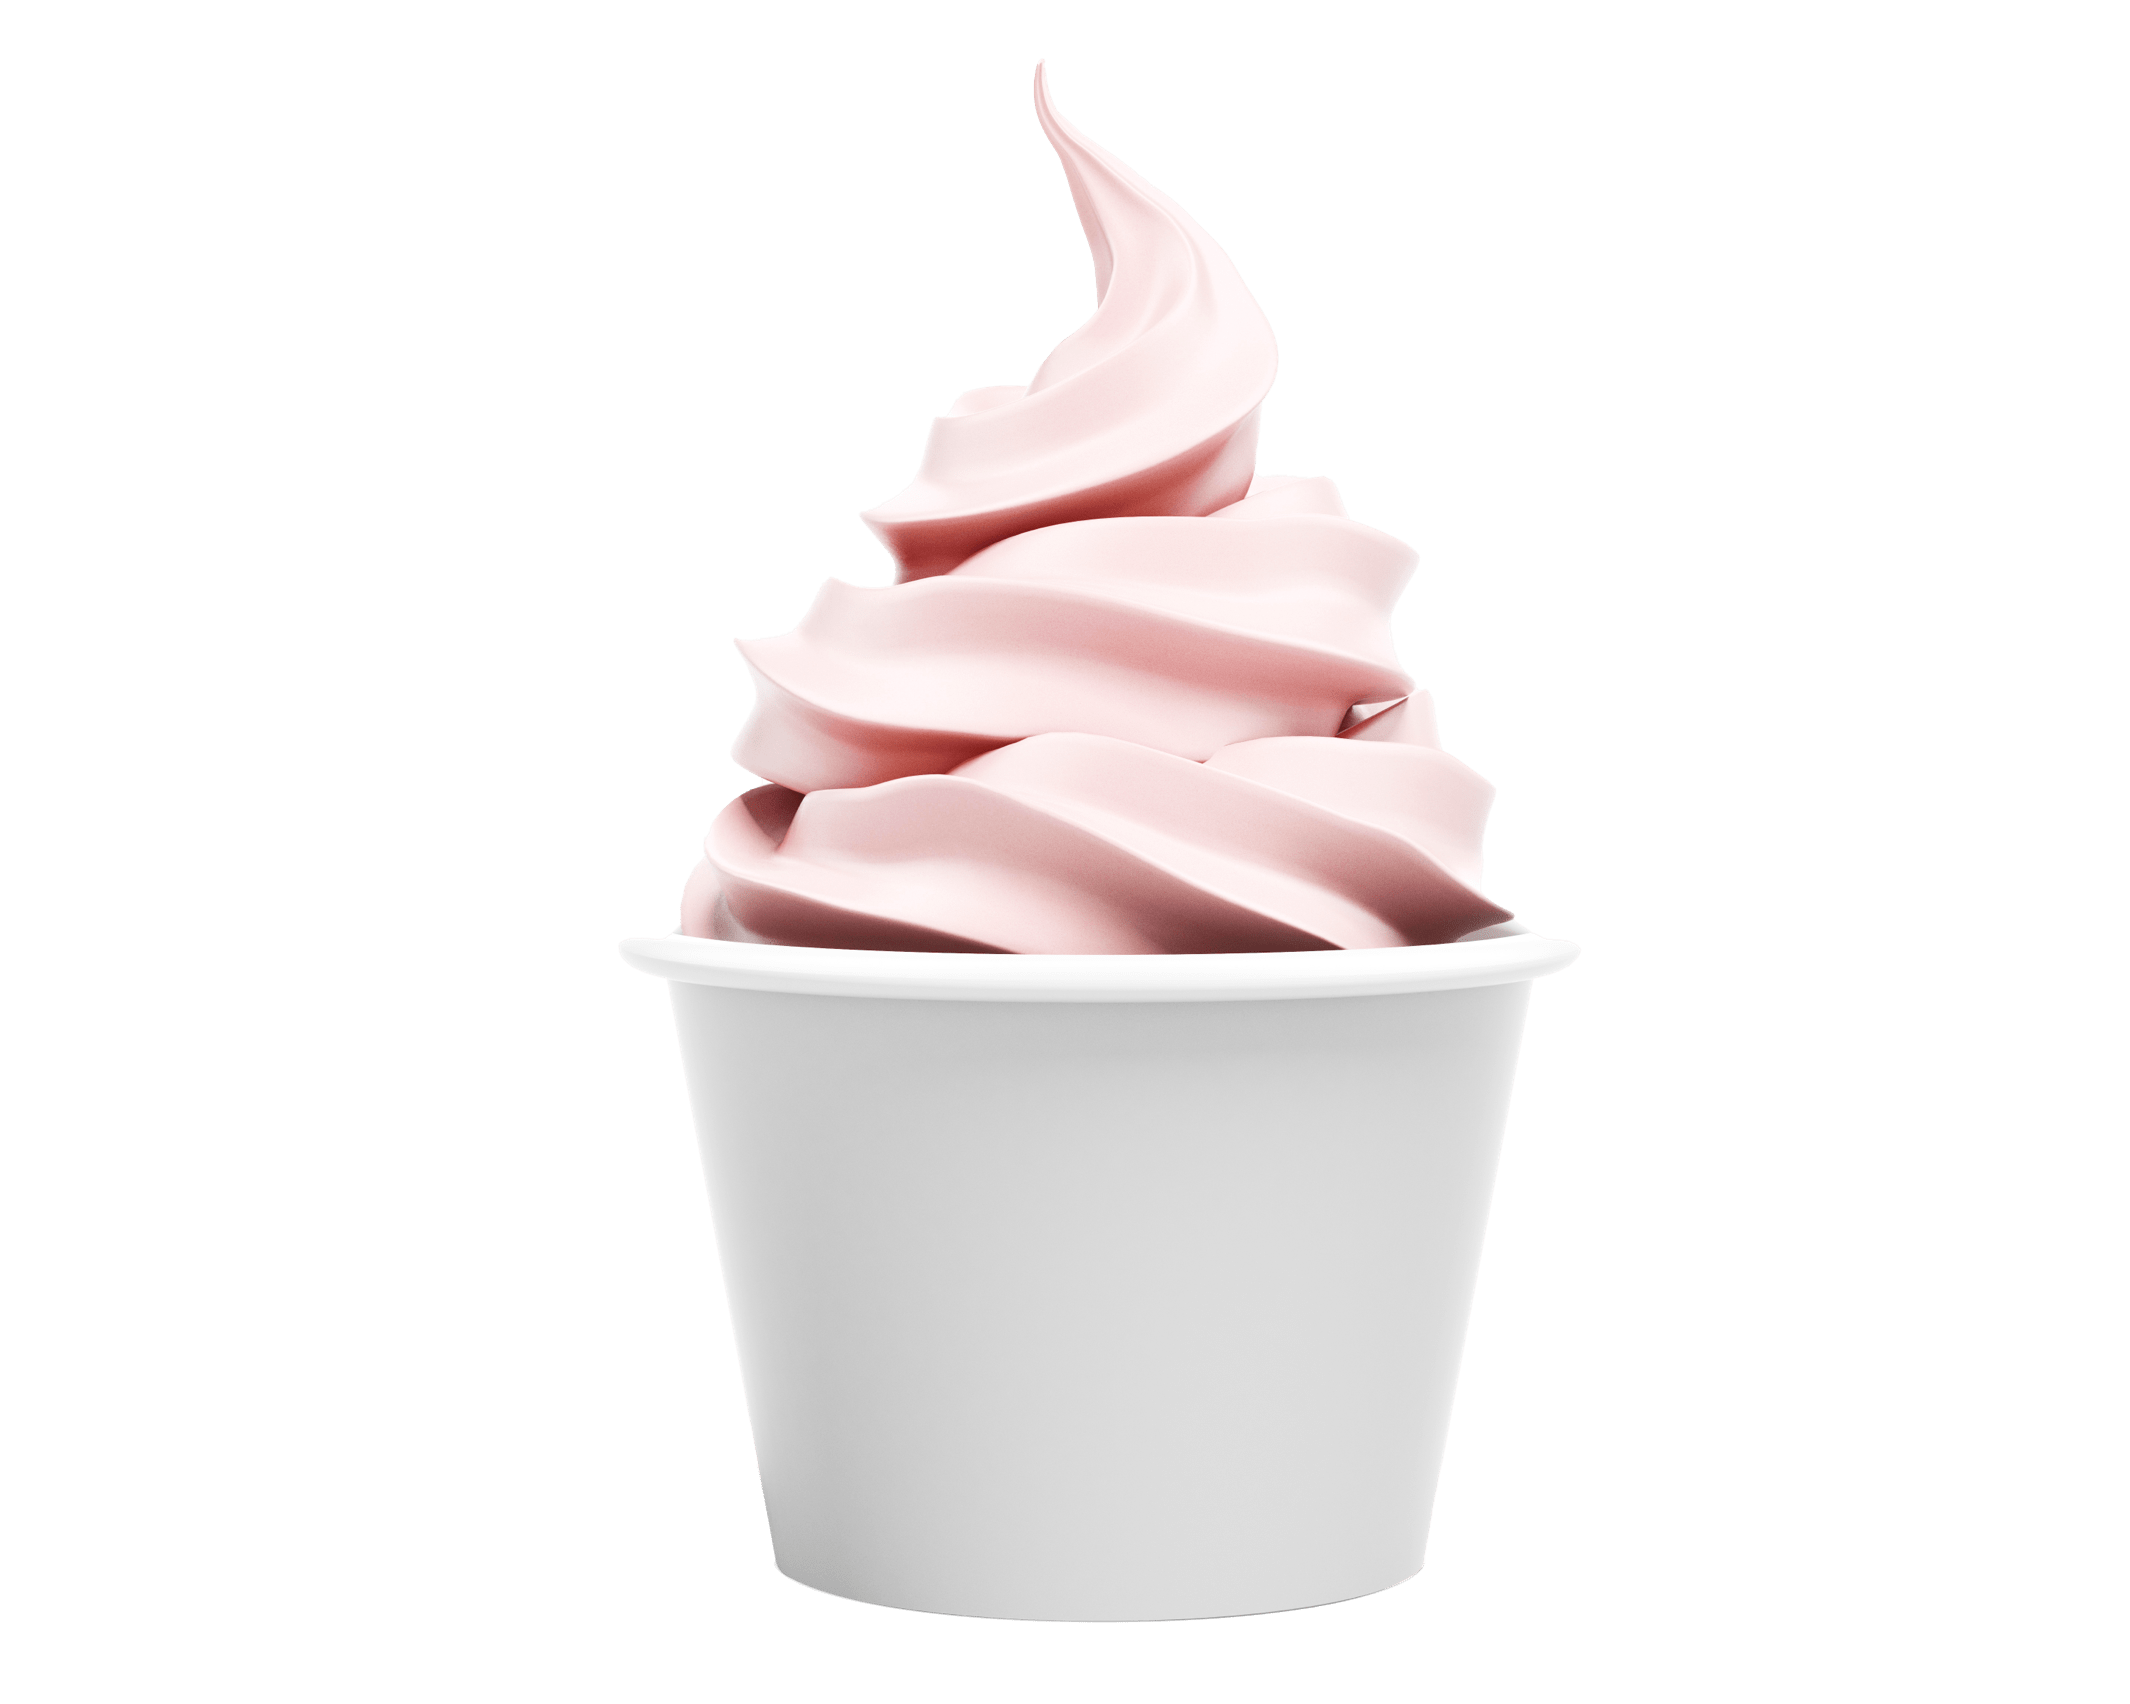 Swirl of strawberry frozen yogurt in a cup